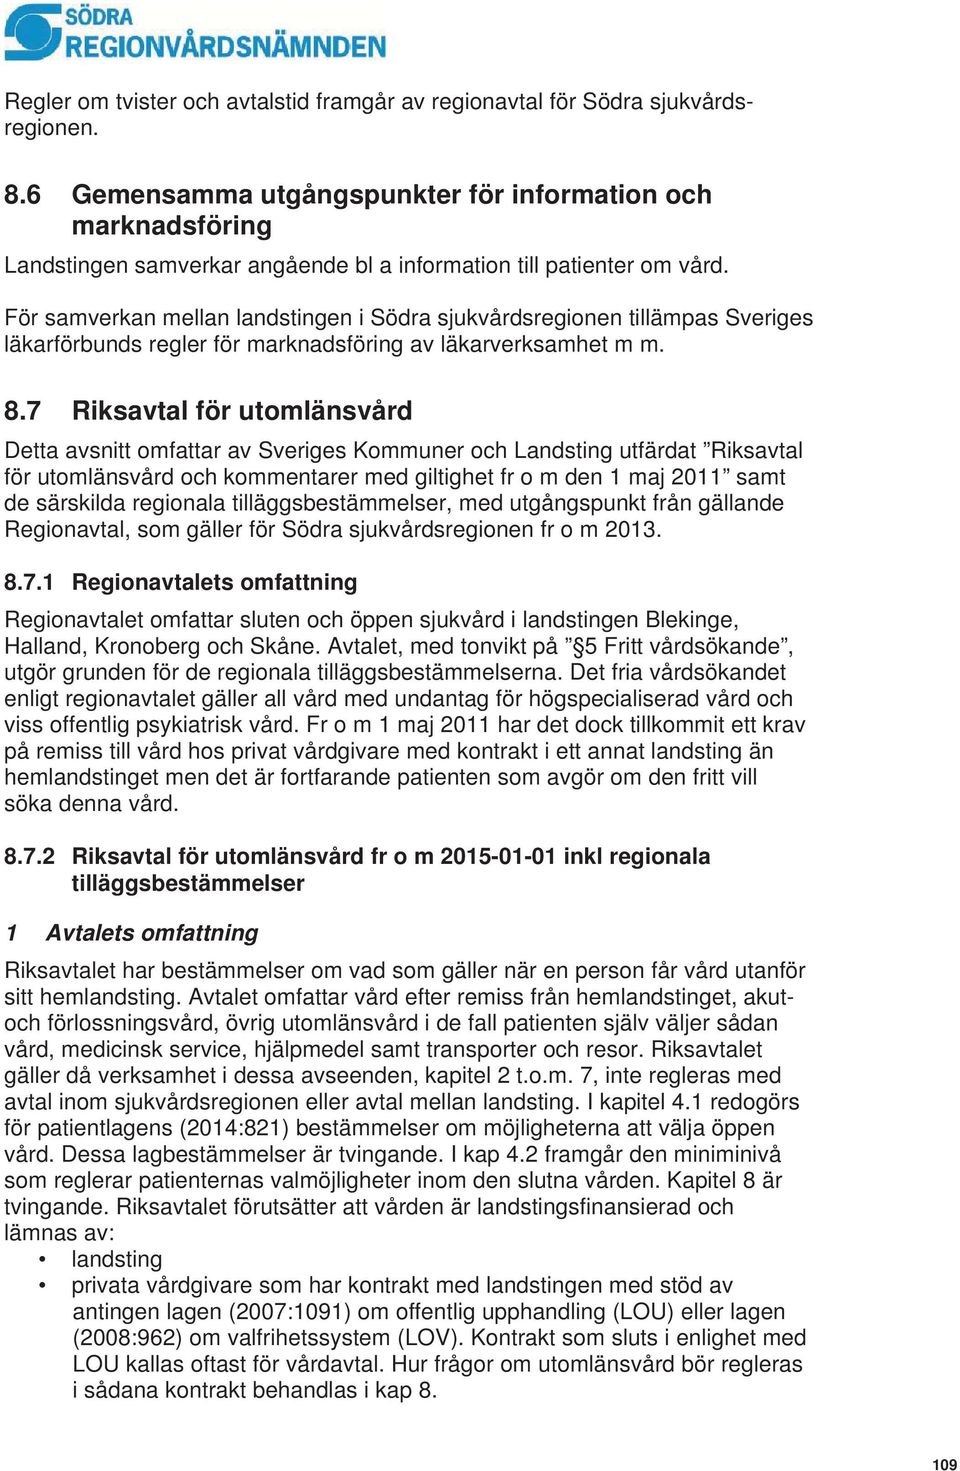 För samverkan mellan landstingen i Södra sjukvårdsregionen tillämpas Sveriges läkarförbunds regler för marknadsföring av läkarverksamhet m m. 8.